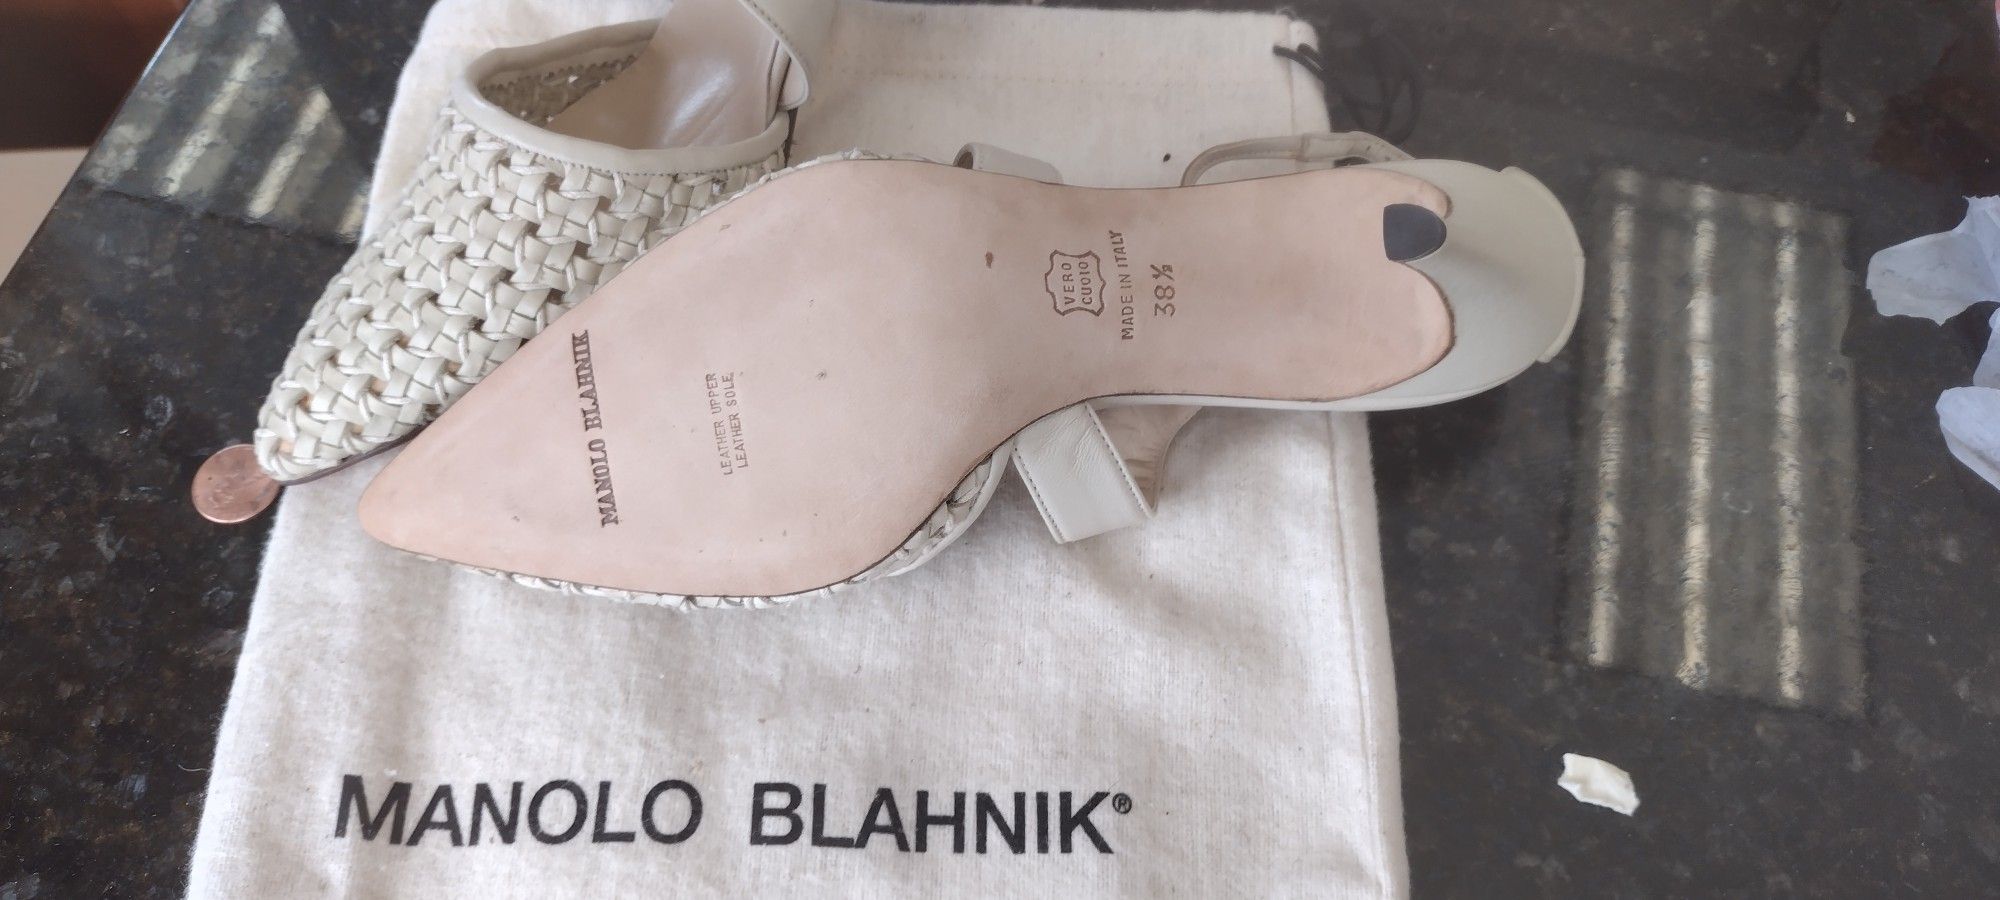 Manolo Blahnik Heels